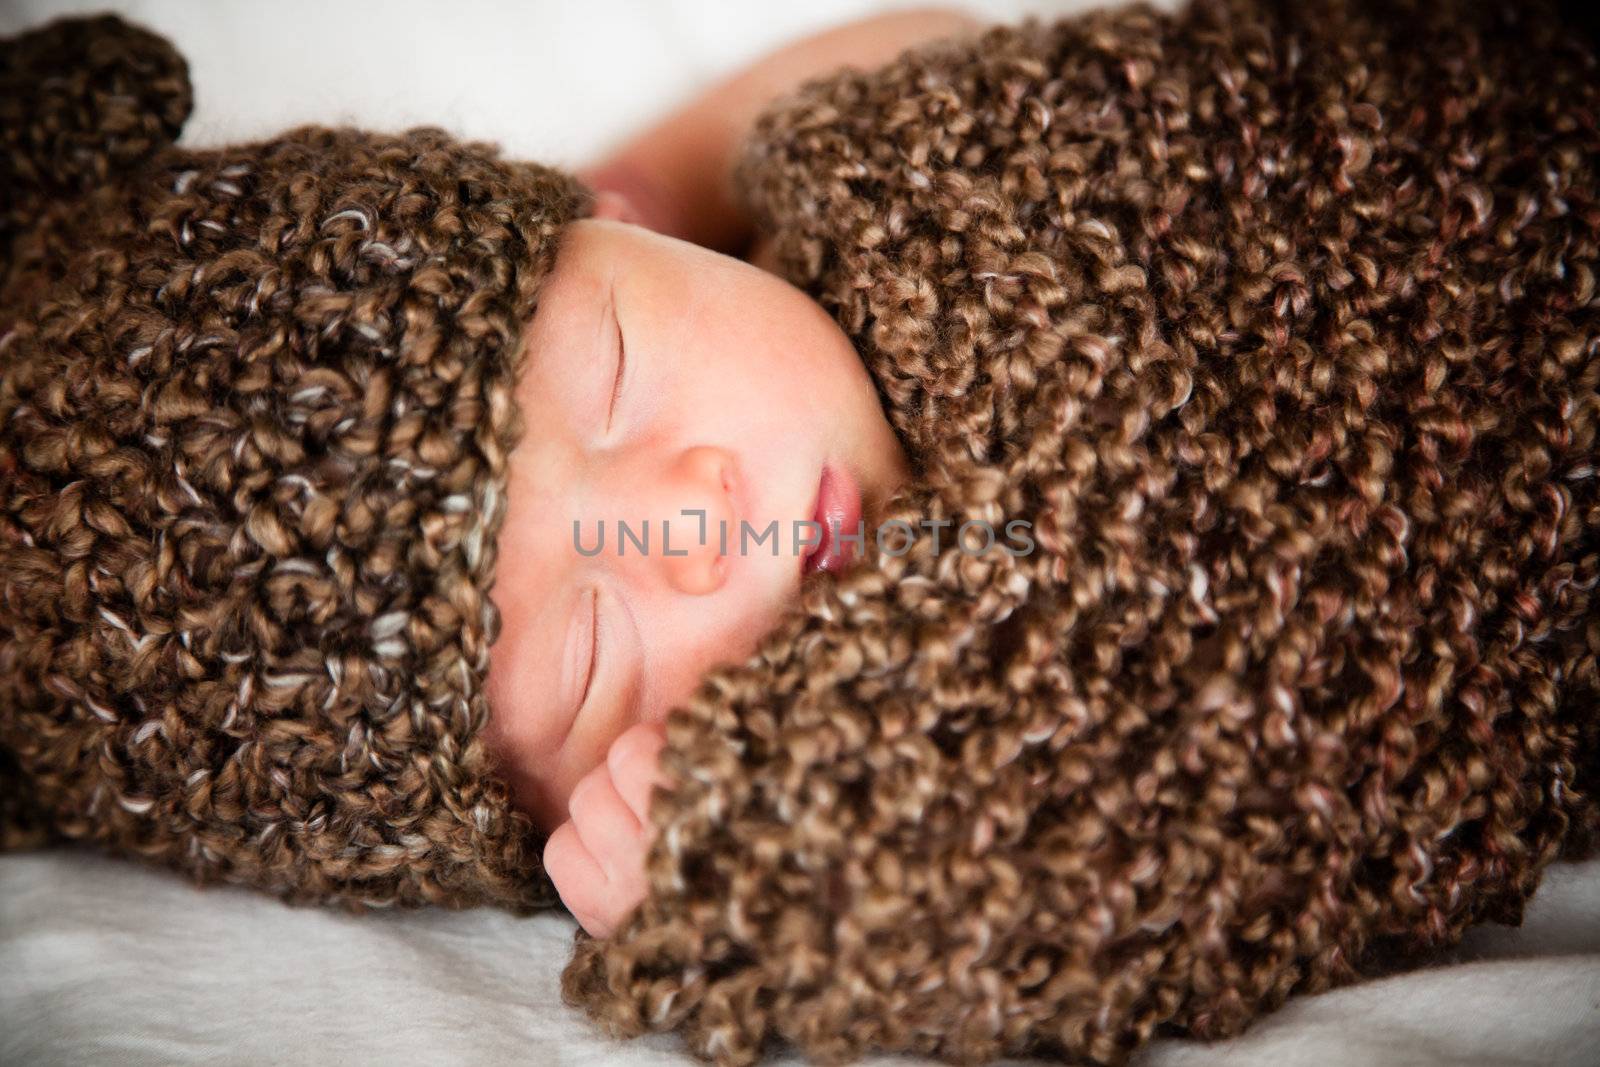 Newborn baby boy resting in a wool cocoon